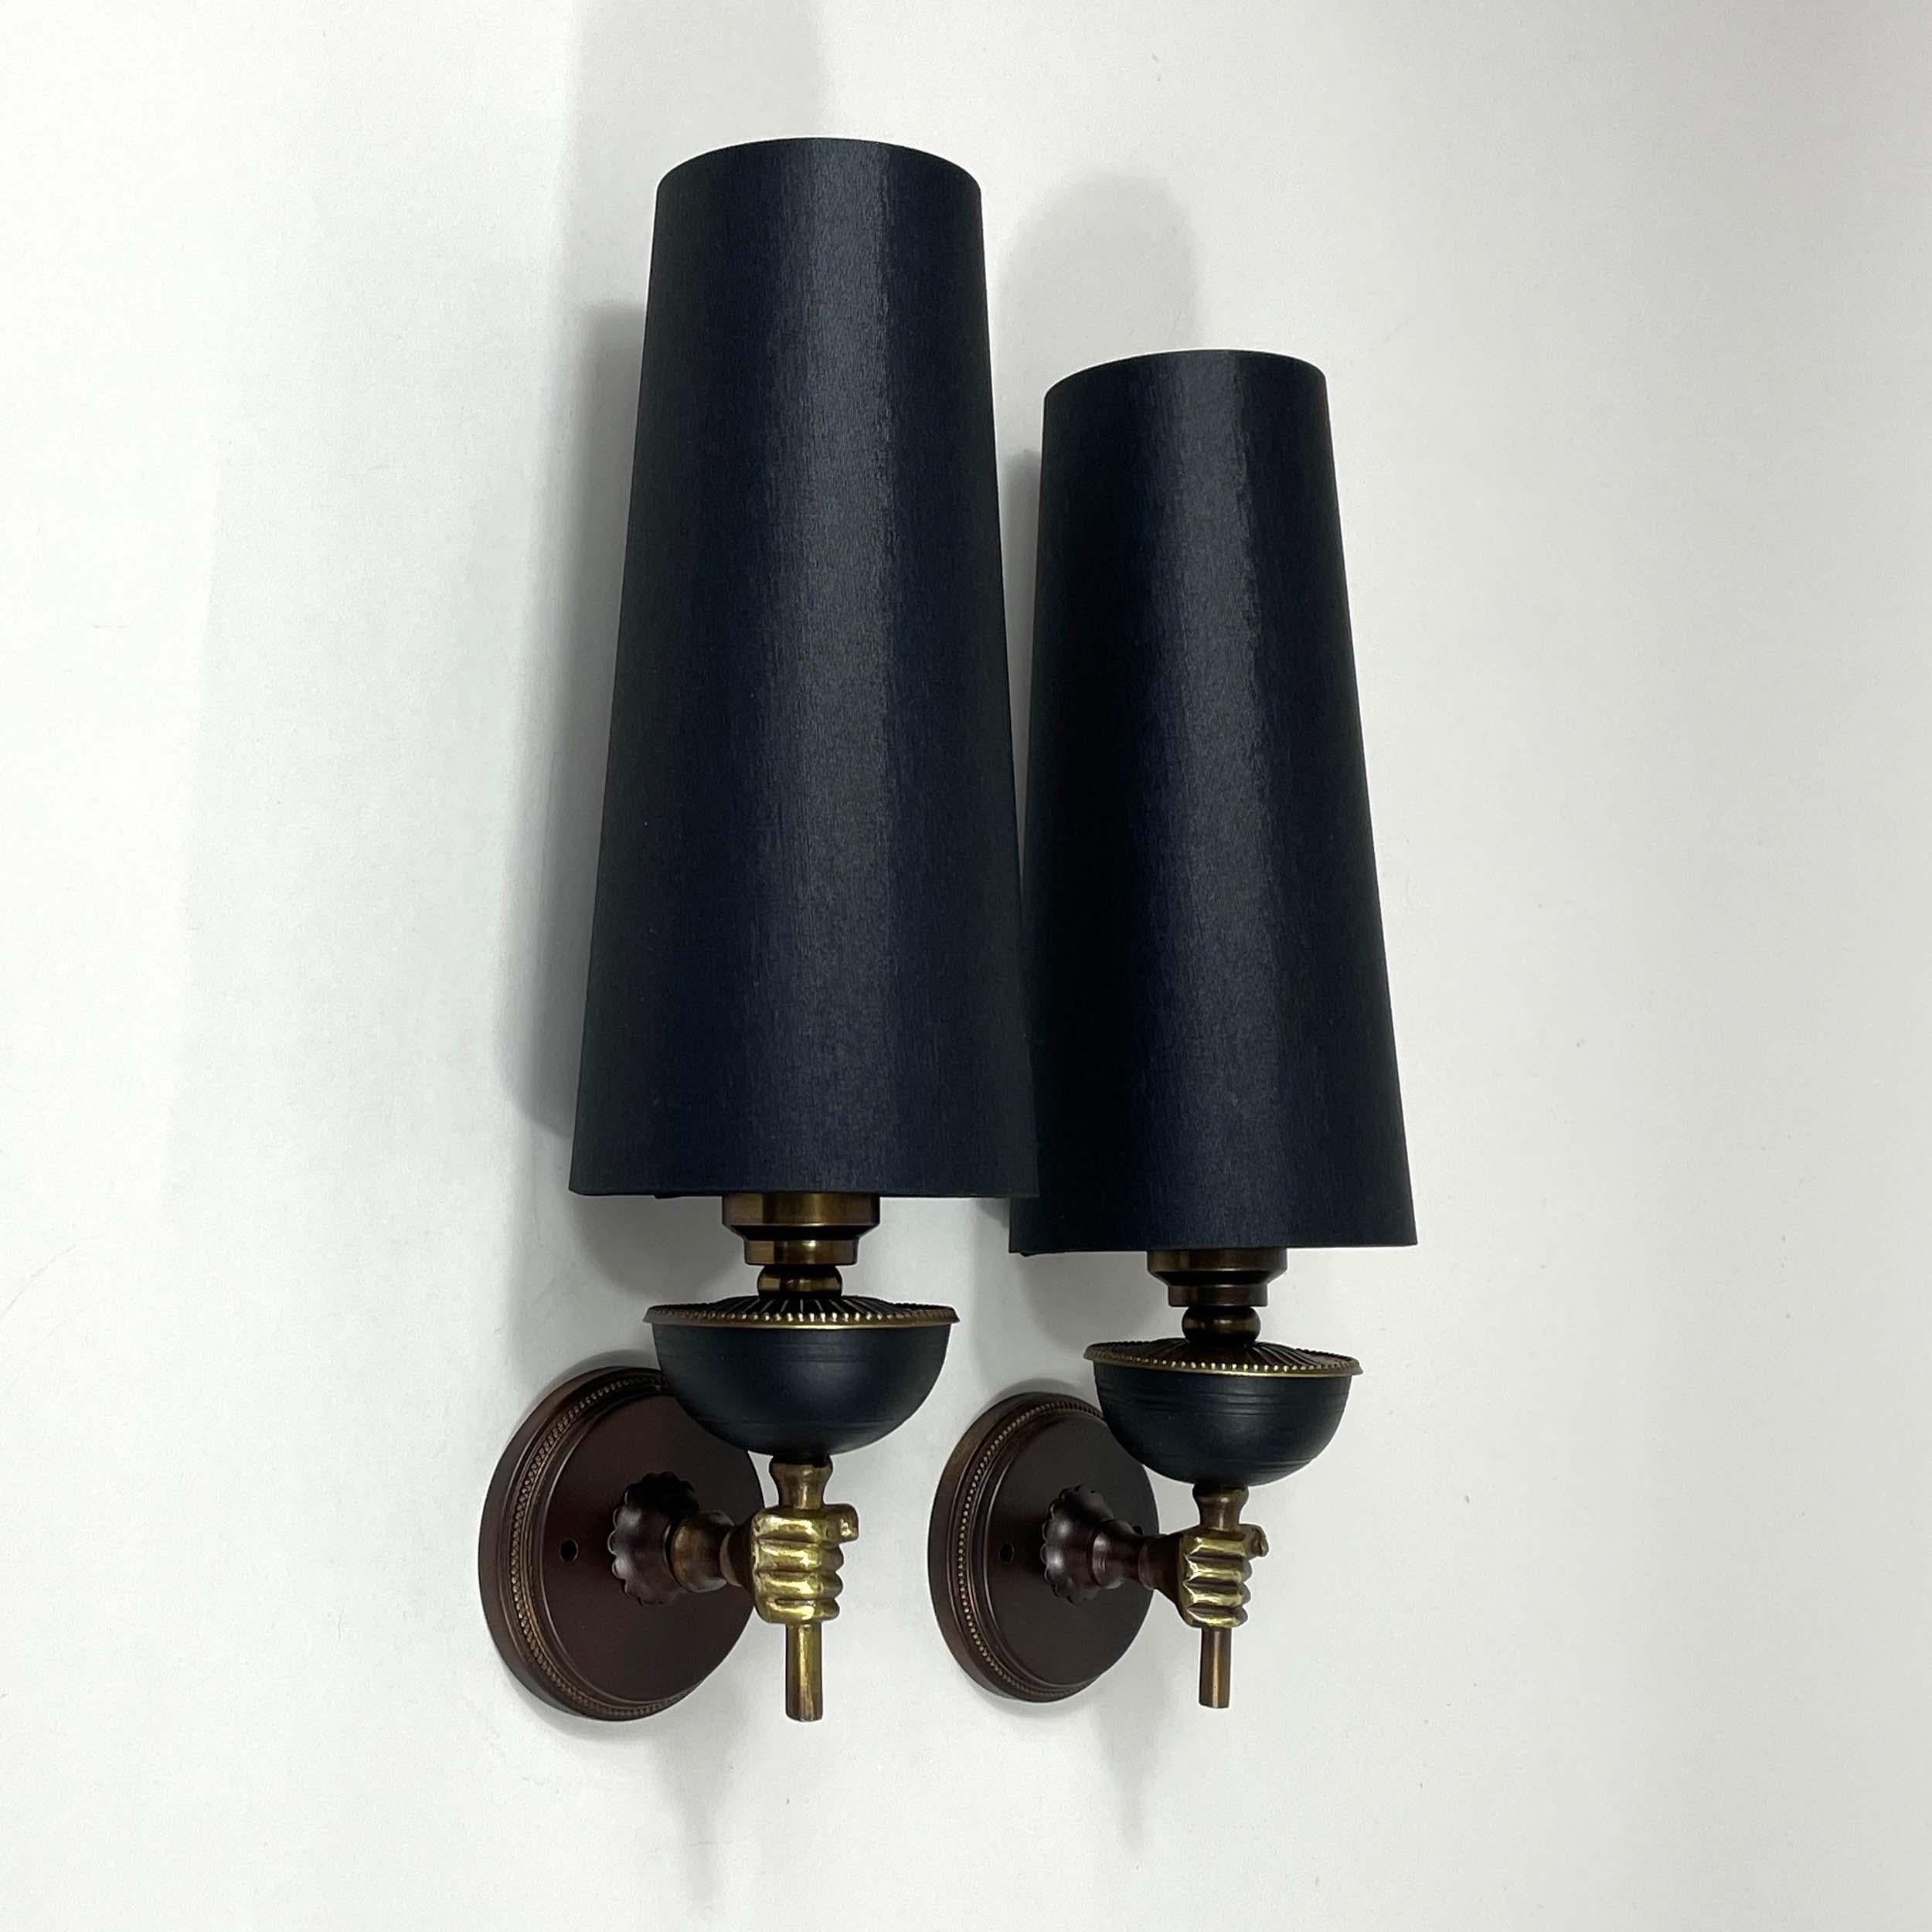 Diese ungewöhnlichen Vintage-Leuchten wurden in den 1950er Jahren in Frankreich entworfen und hergestellt. Sie verfügen über Fackellampen aus Messing/Bronze mit (neuen) handgefertigten Lampenschirmen aus schwarzem Seidenstoff.

Die Leuchten sind für